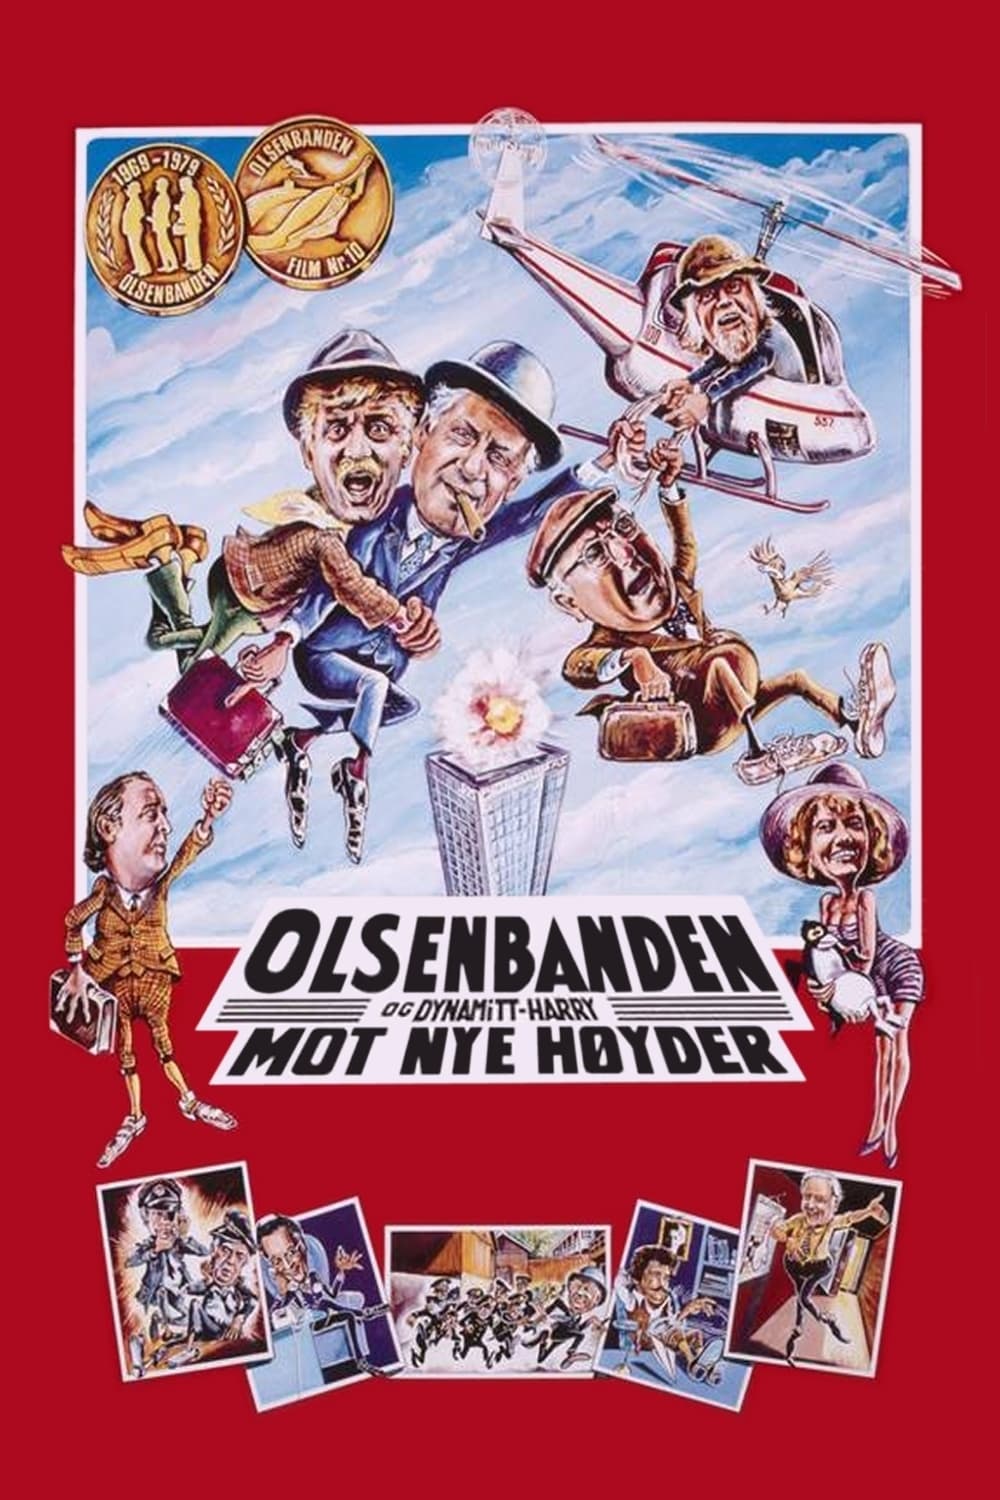 Olsenbanden og Dynamitt-Harry mot nye høyder (1979)